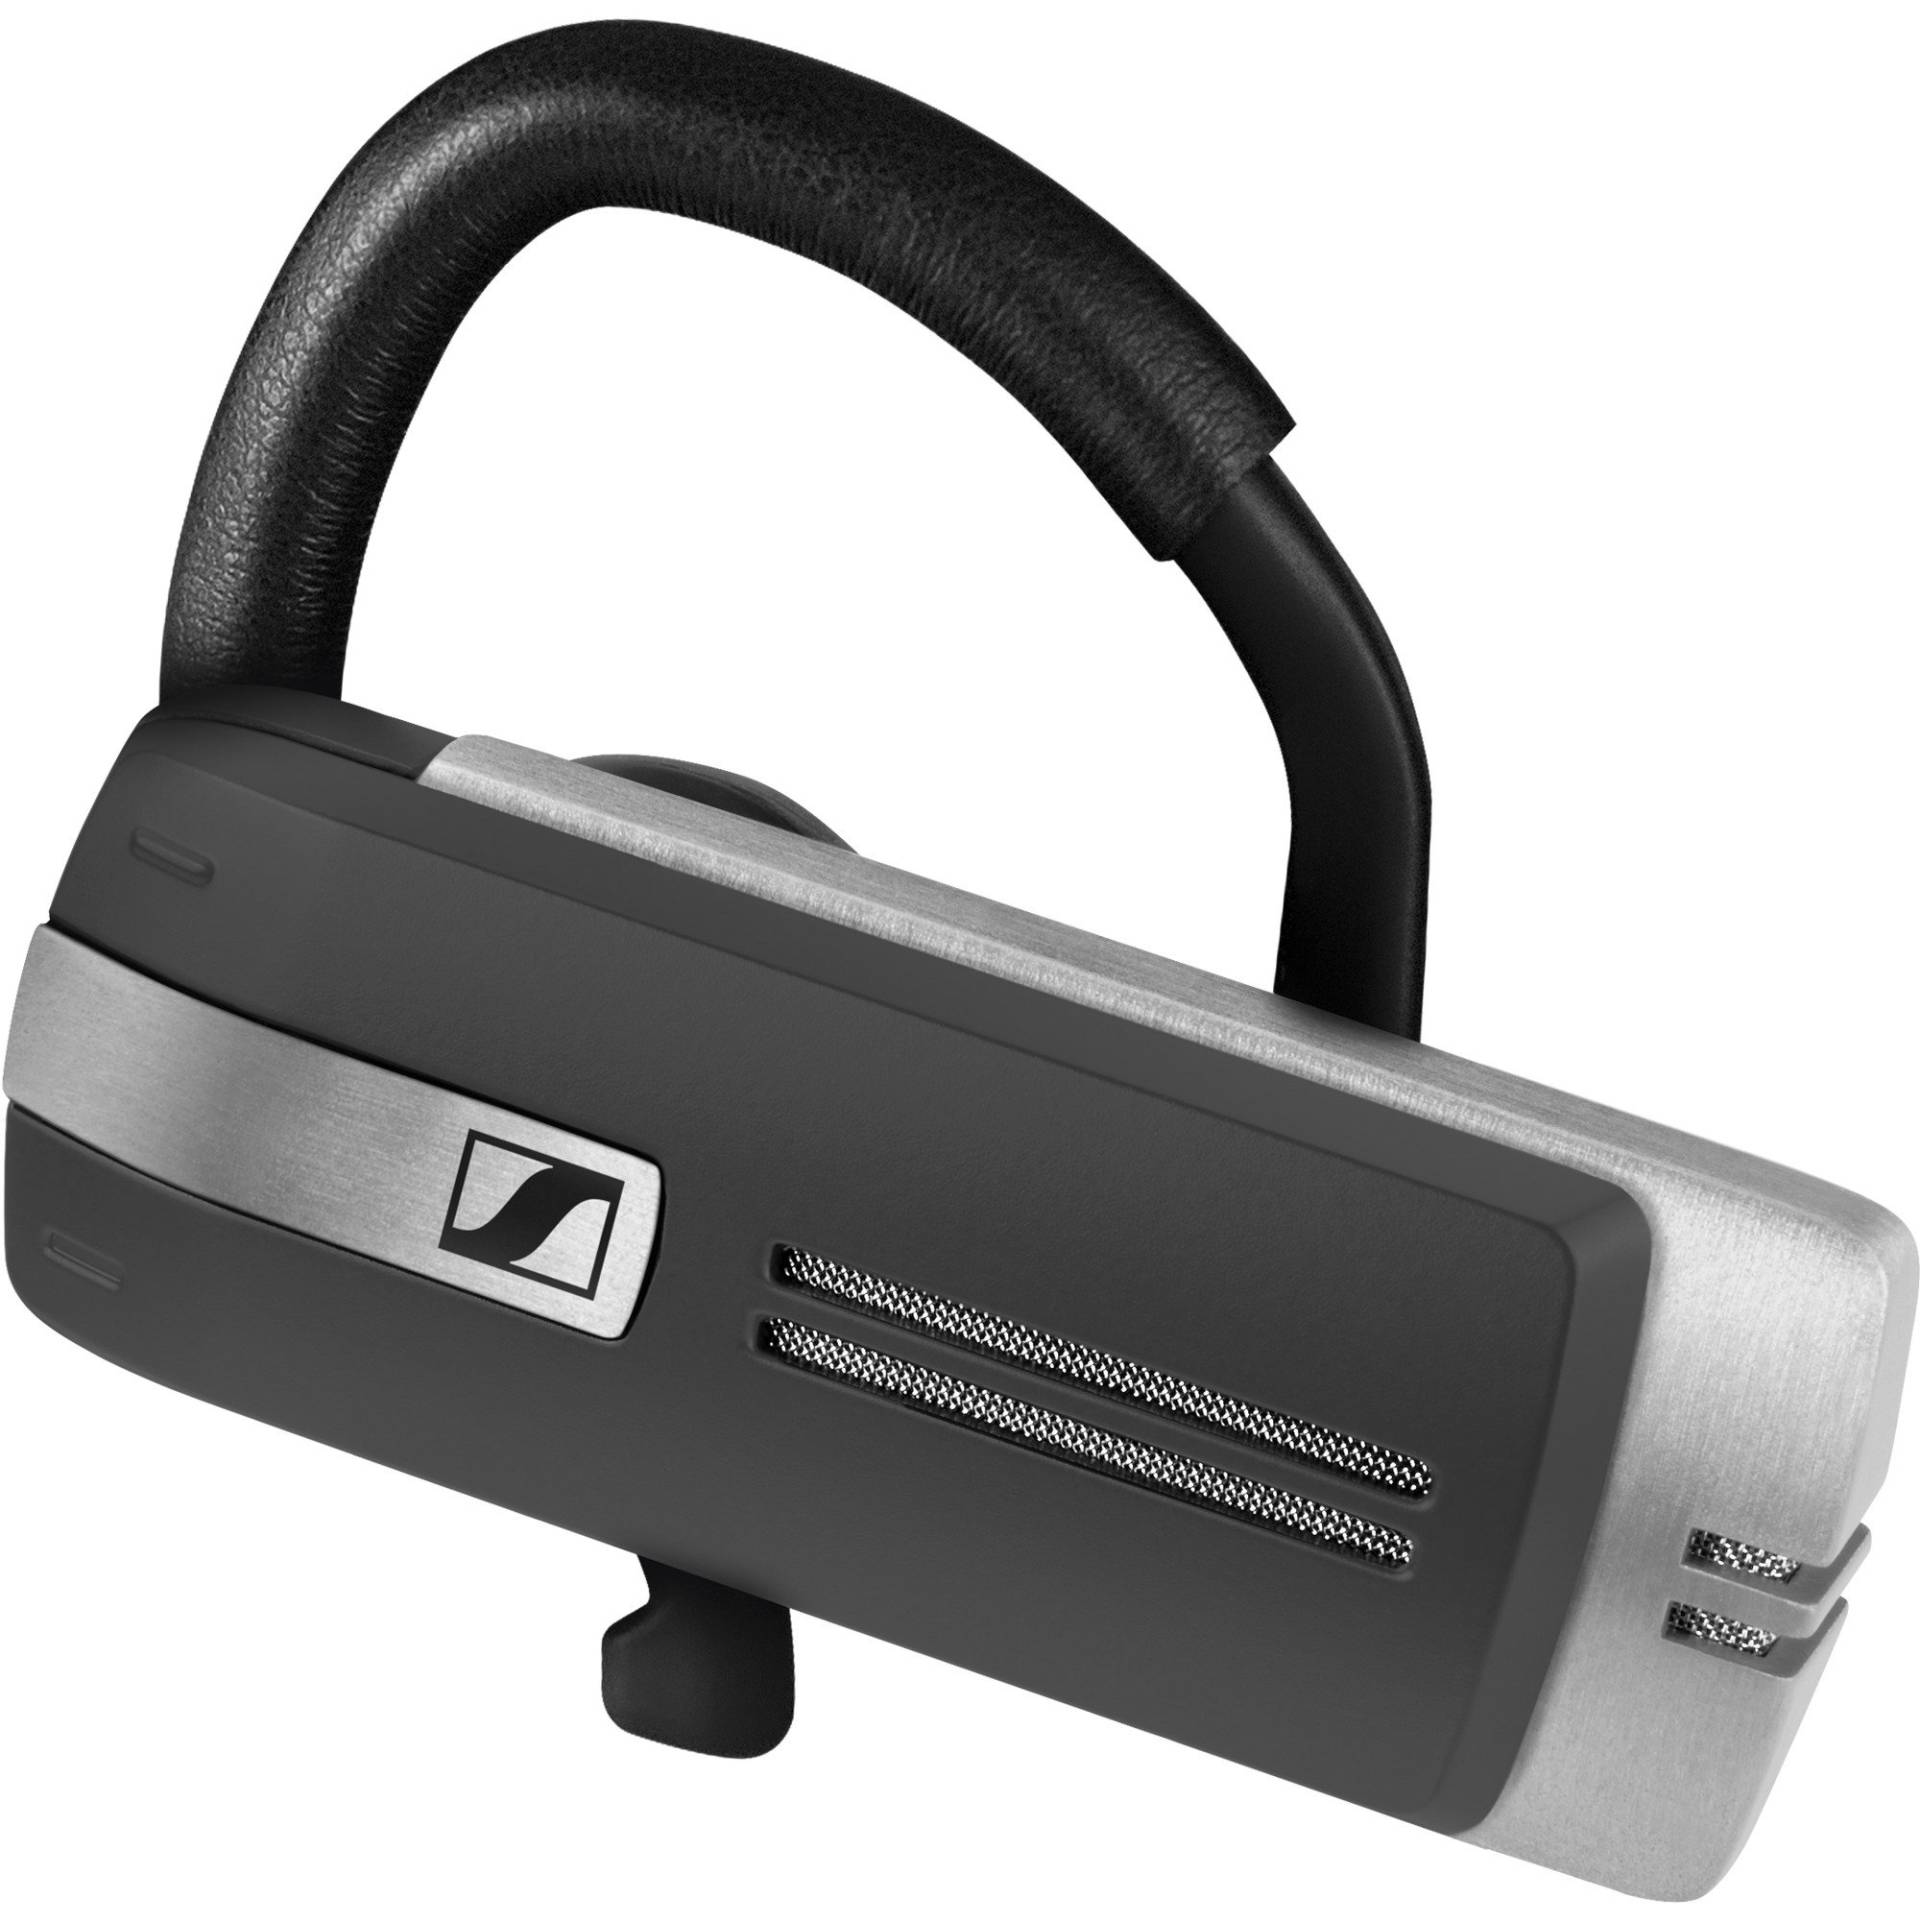 ADAPT Presence Grey UC, Headset von Sennheiser